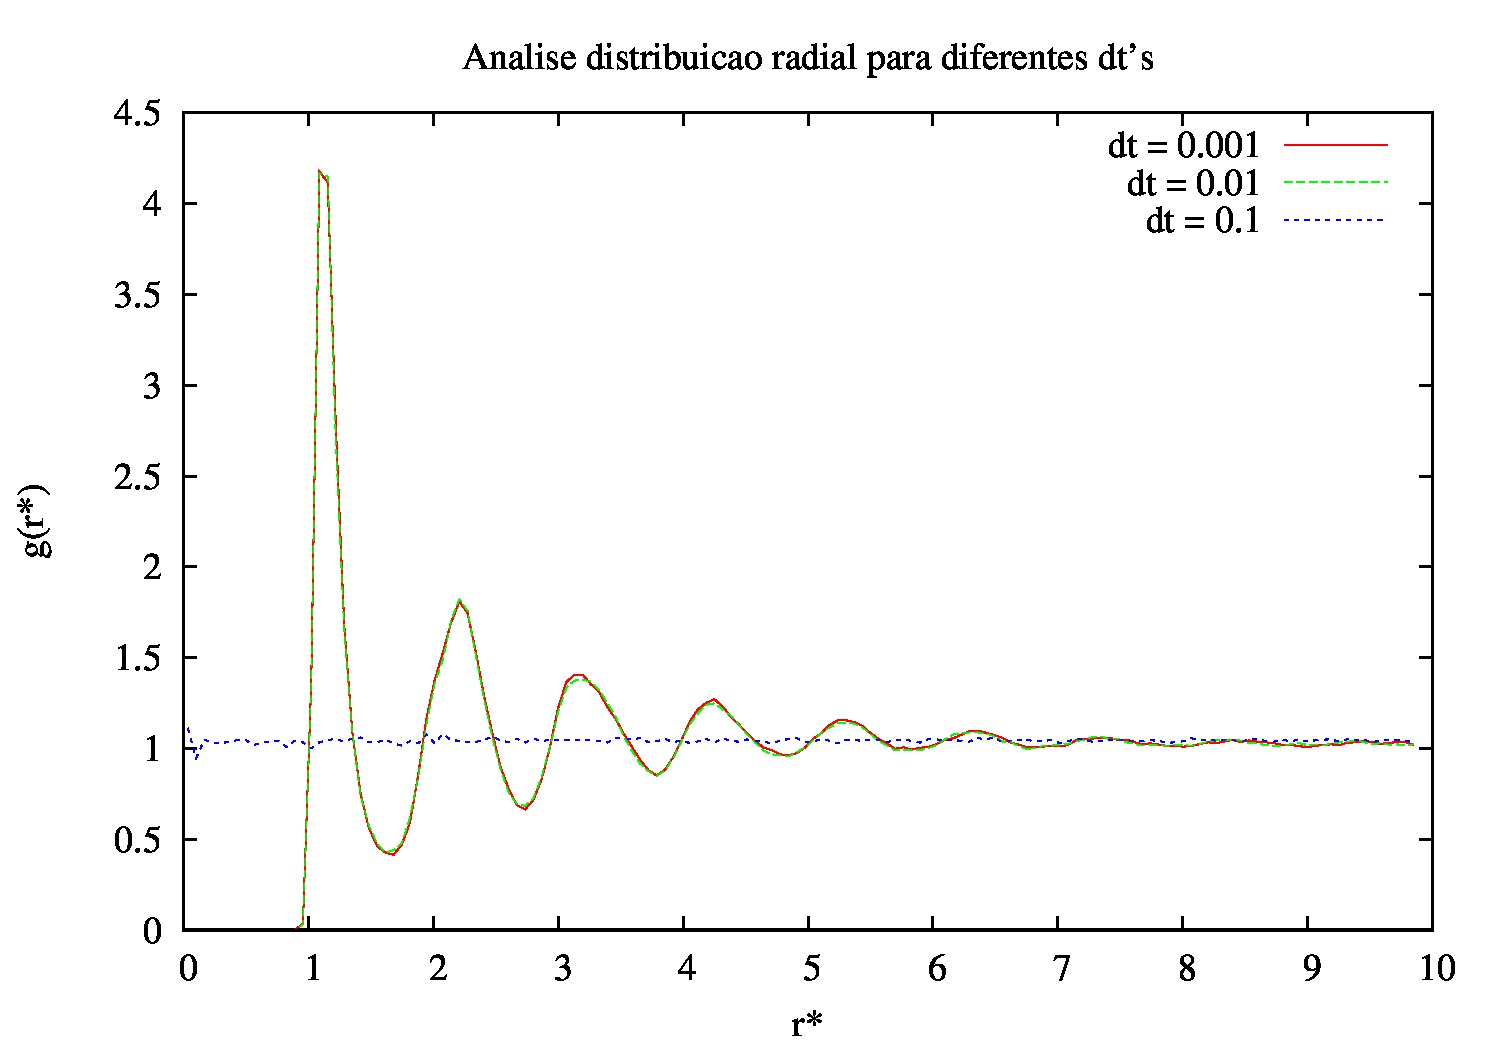 Função de distribuição radial do sistema para diferentes delta t's.